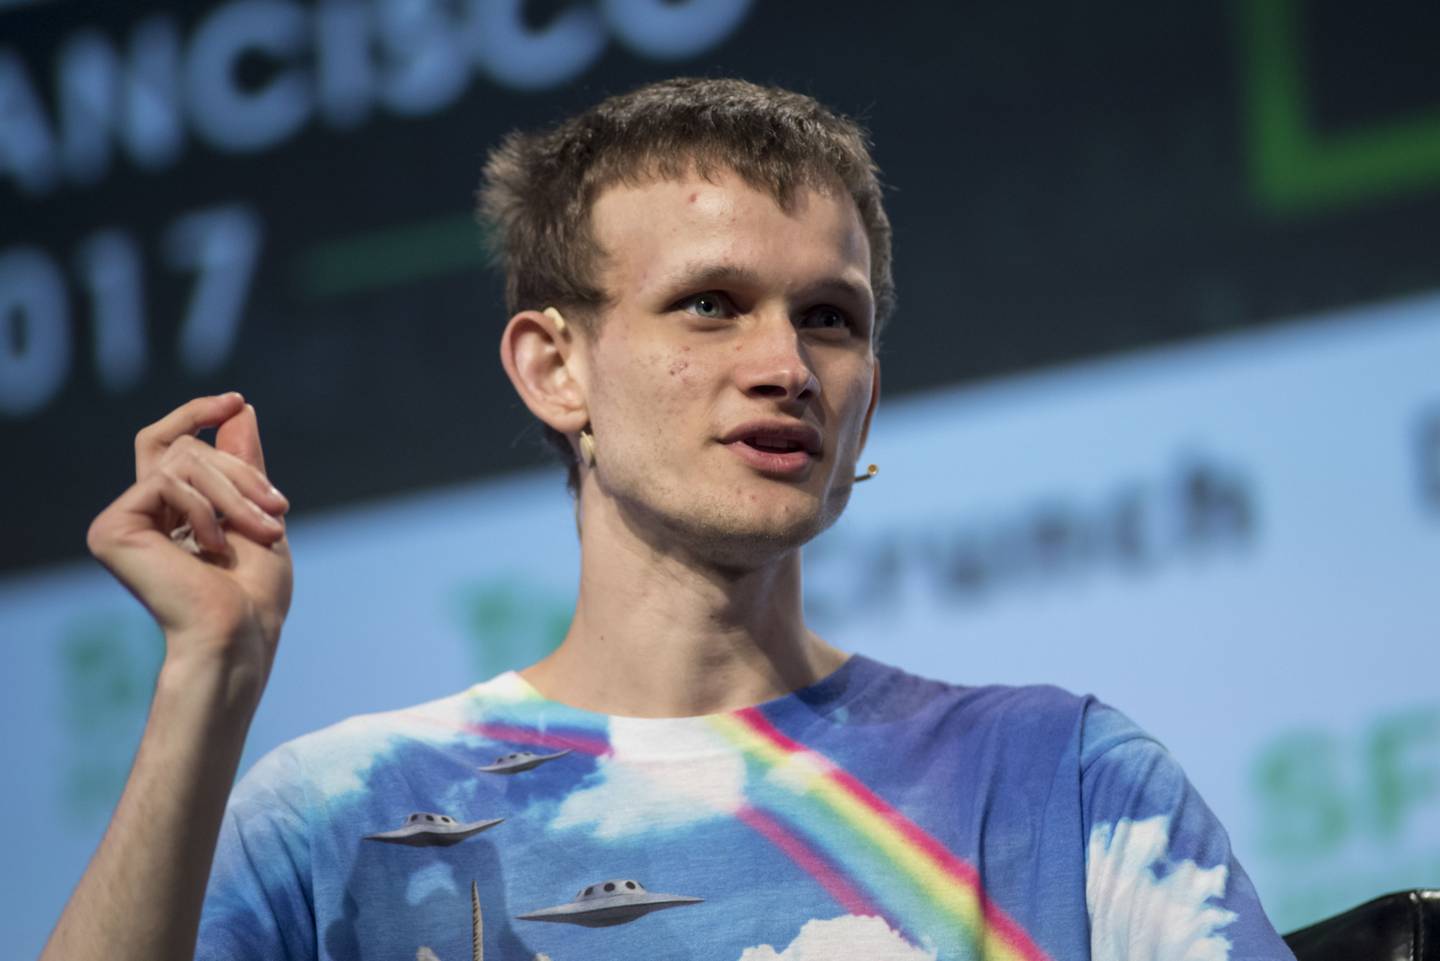 El cofundador de la Fundación Ethereum y de la revista Bitcoin, durante el TechCrunch Disrupt 2017 en San Francisco, California.